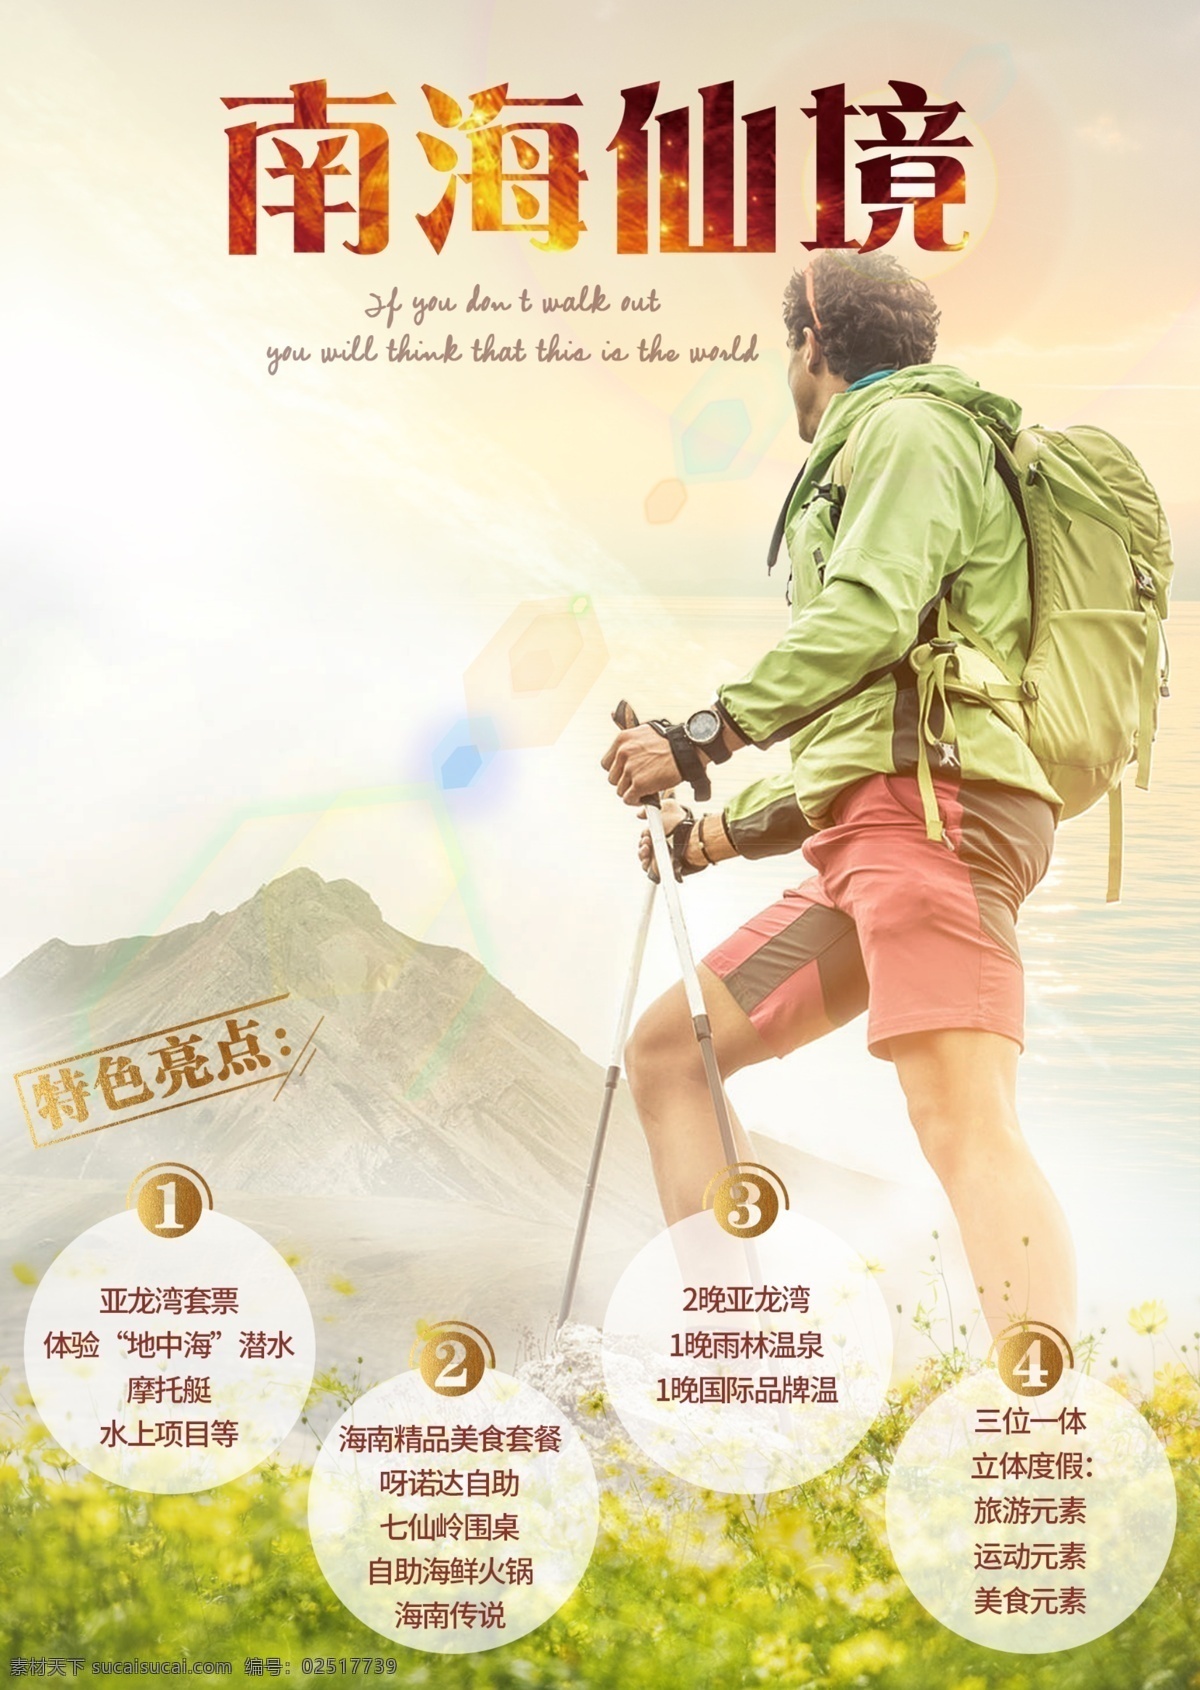 南海 仙境 白色 国内旅游 海报免费下载 海岛 海南 浪漫 旅游海报 登山 爬上 探险